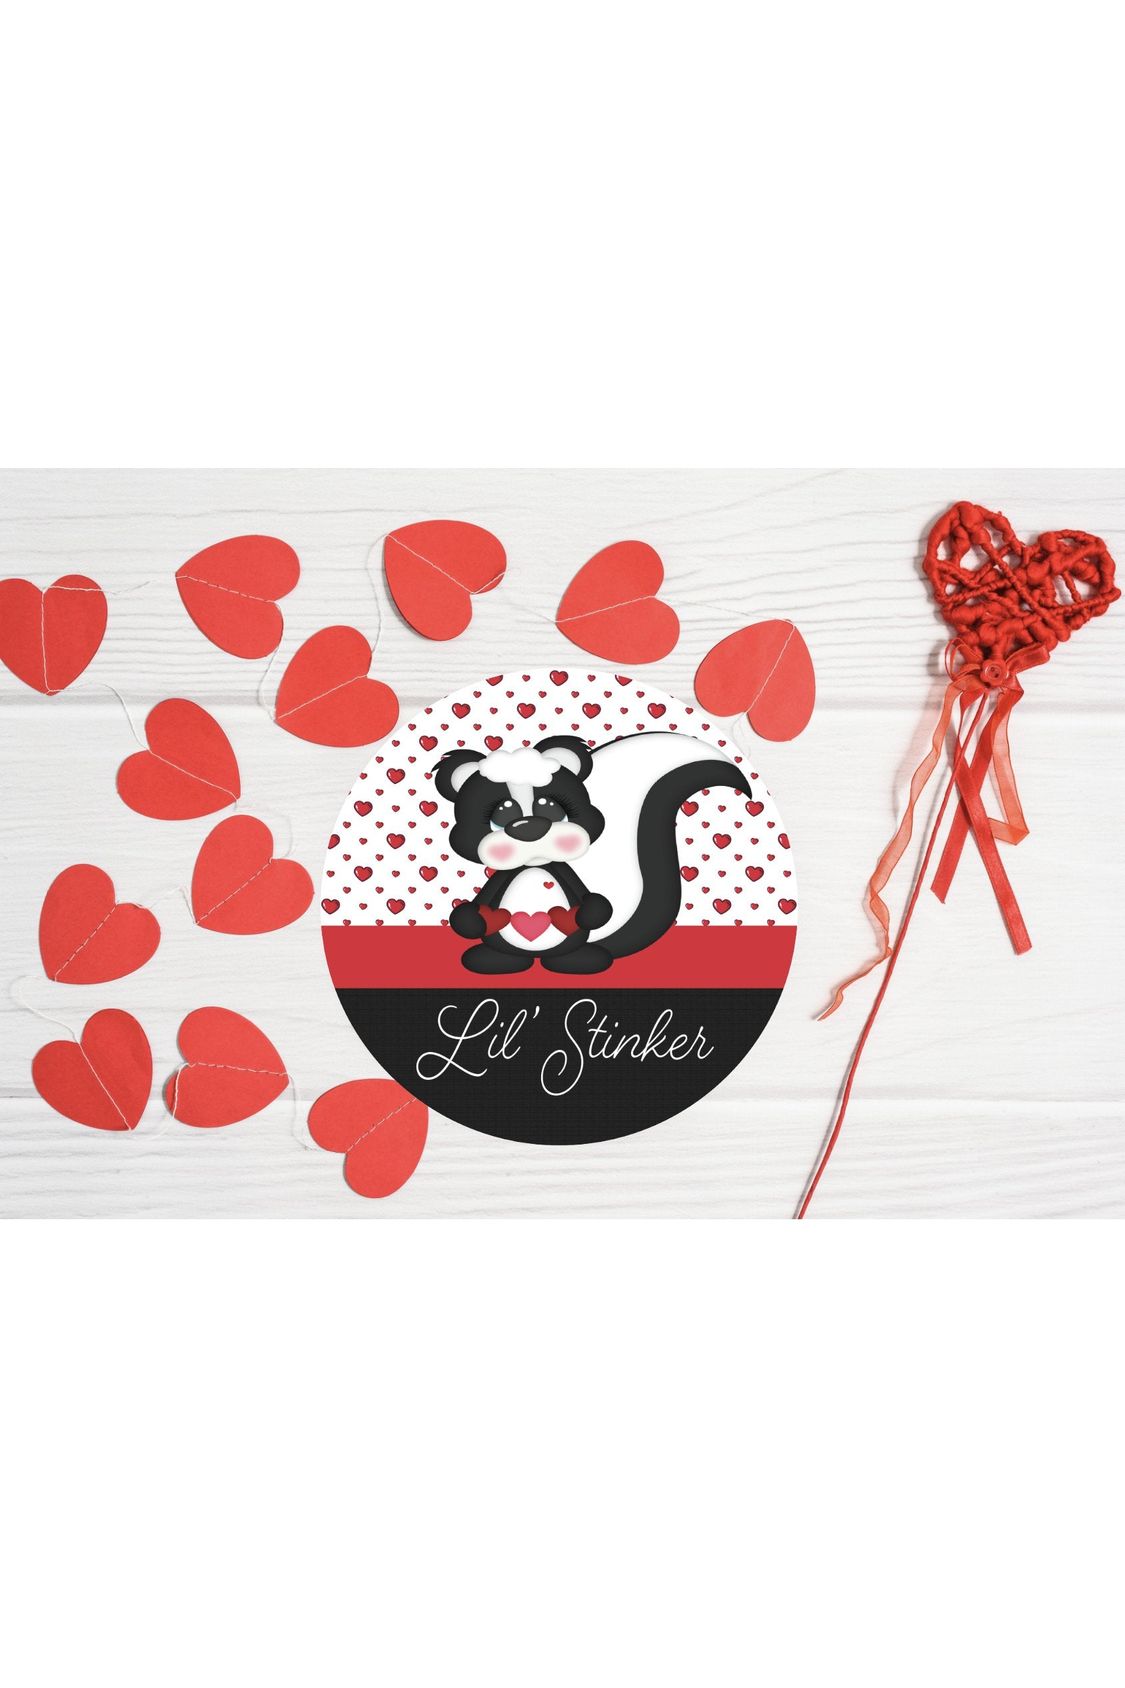 Shop For Lil Stinker Skunk Valentine Sign - Wreath Enhancement